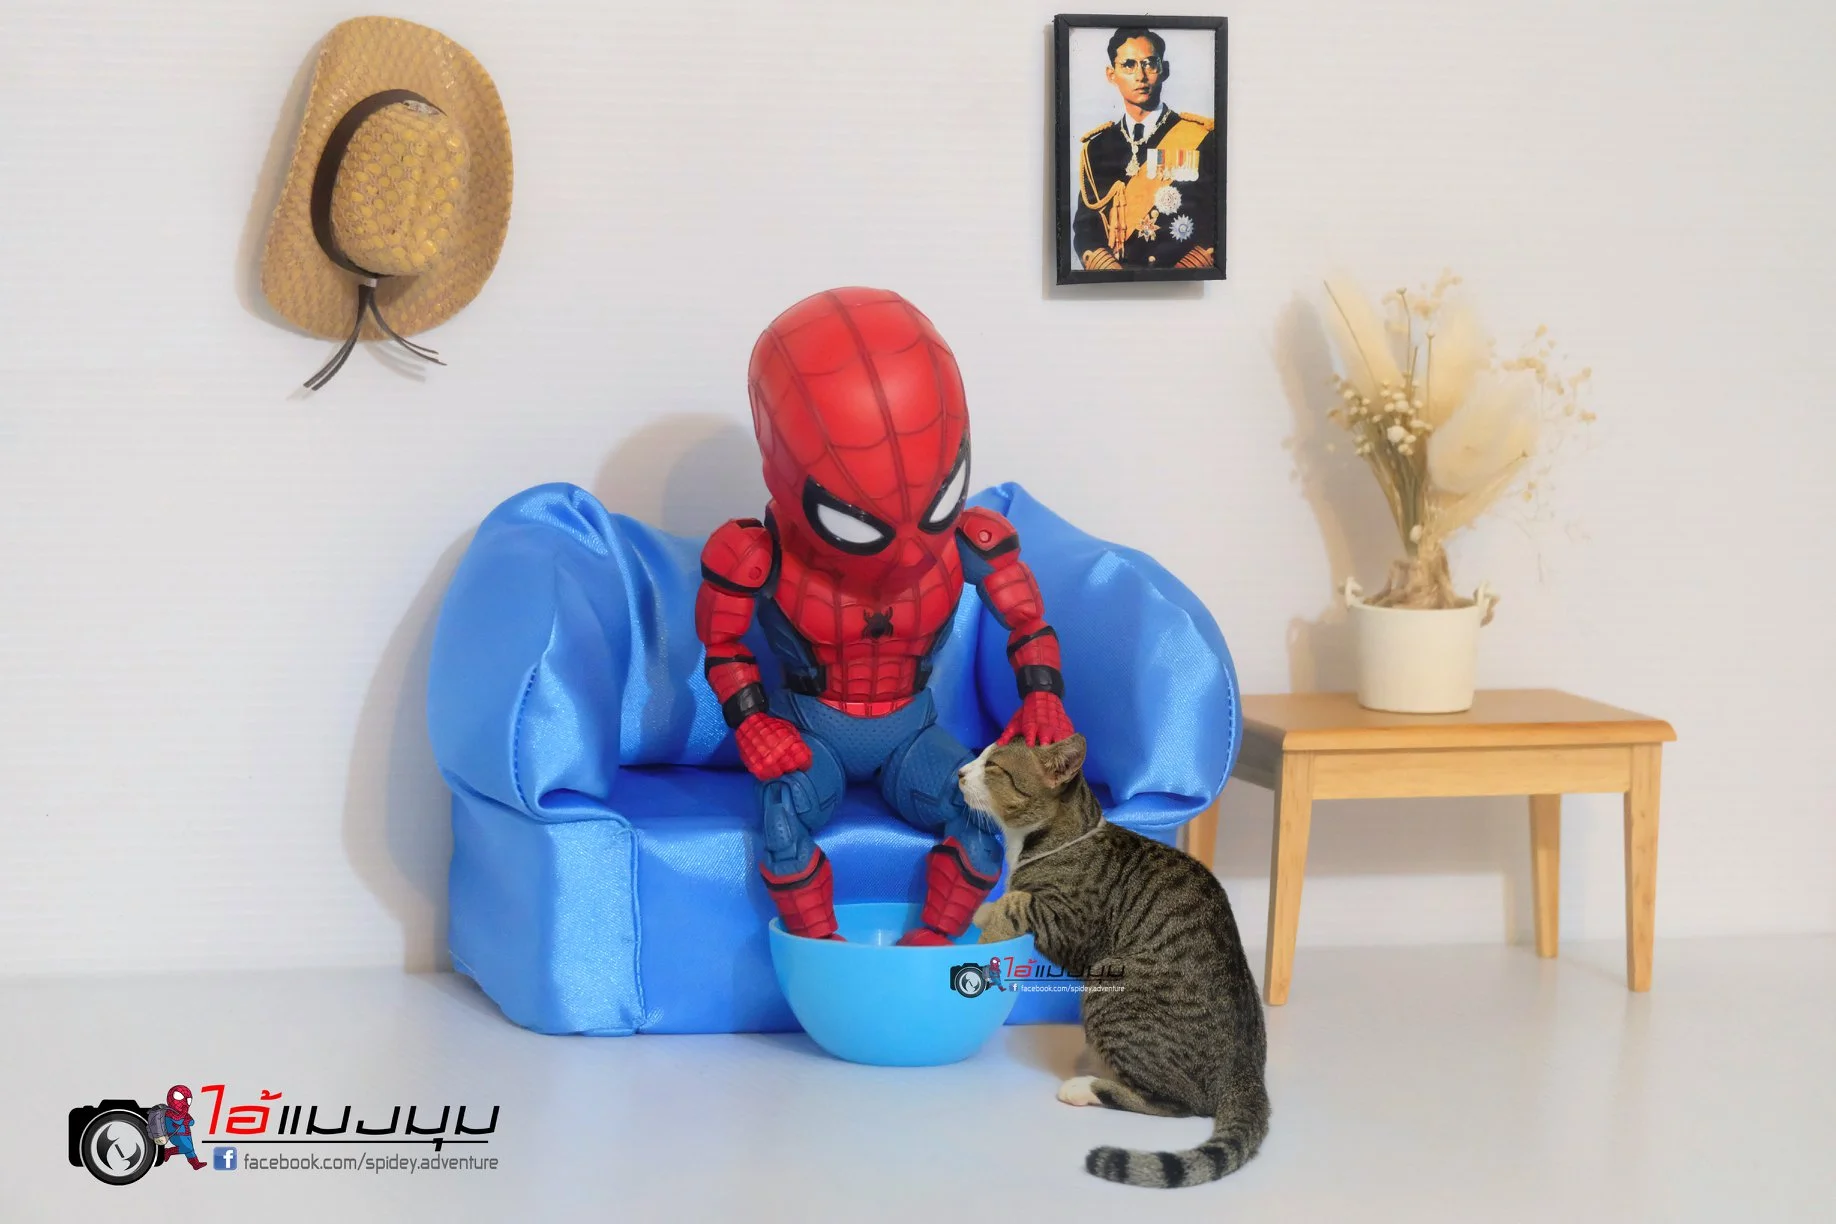 Художник додав до фото з котиками зображення Людини-павука – це виглядає дуже смішно - фото 459354